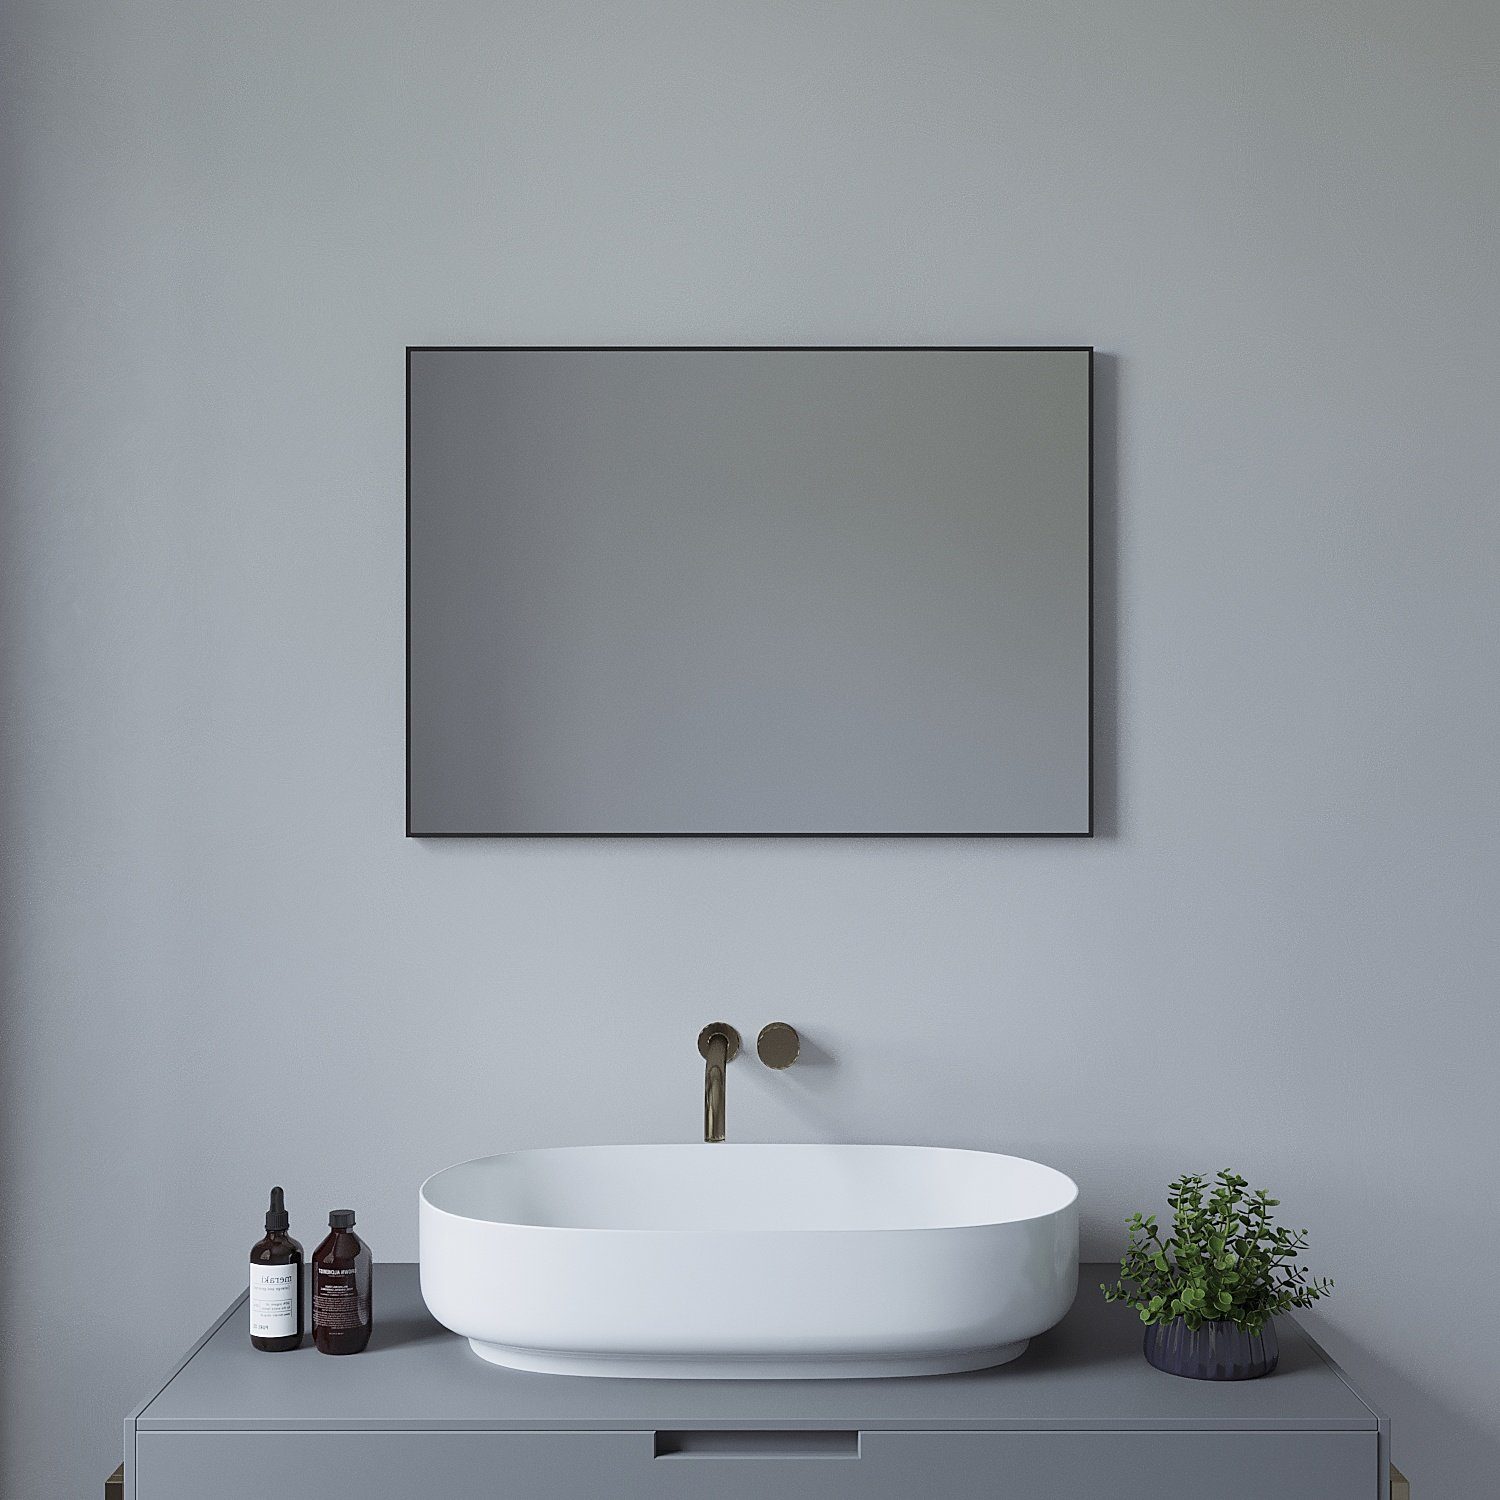 Ein badezimmer mit einem großen spiegel und einem waschbecken mit ablage